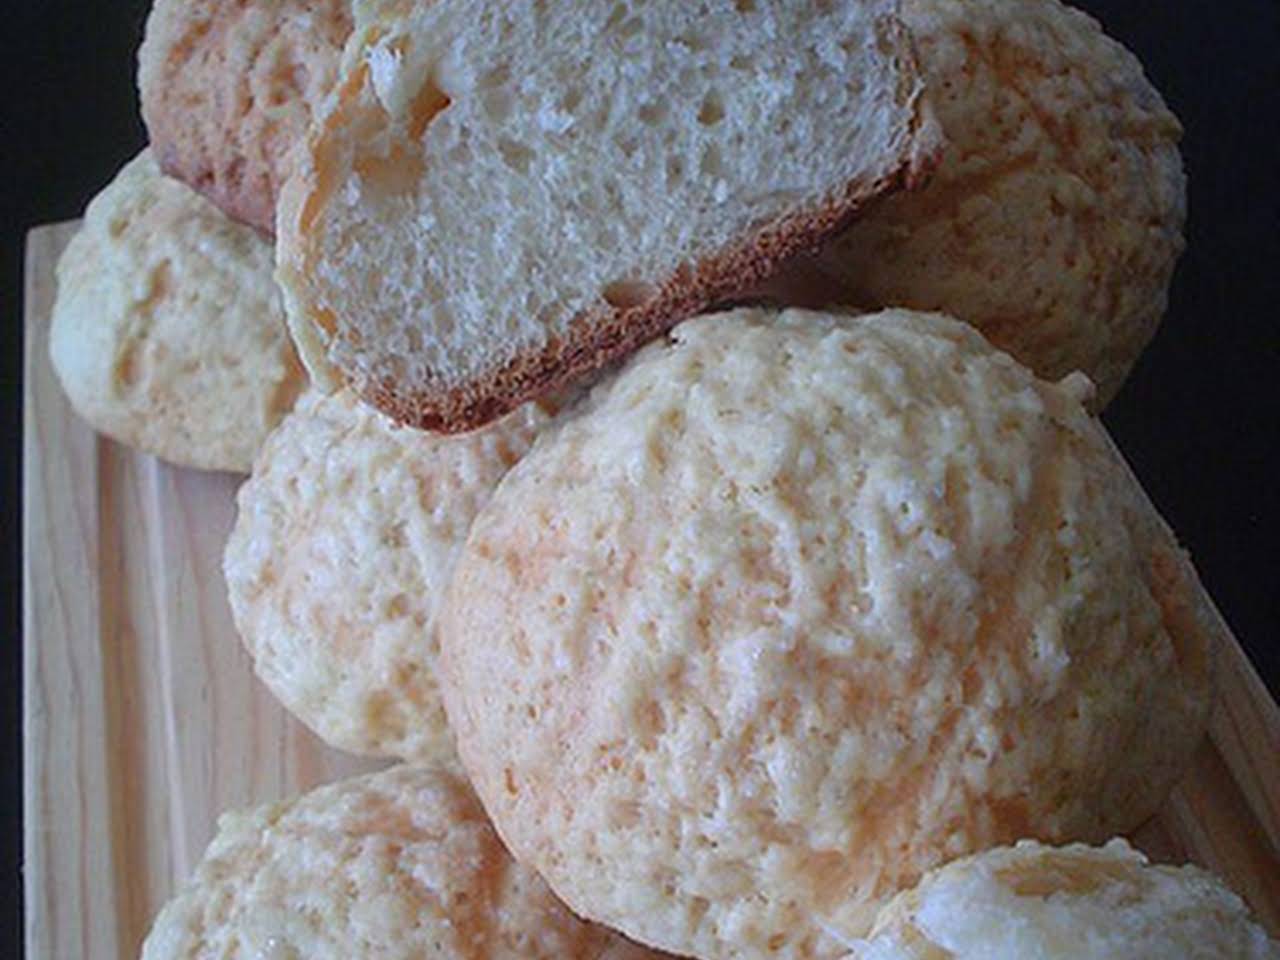 10 Best Dried Milk Powder Bread Recipes | Yummly